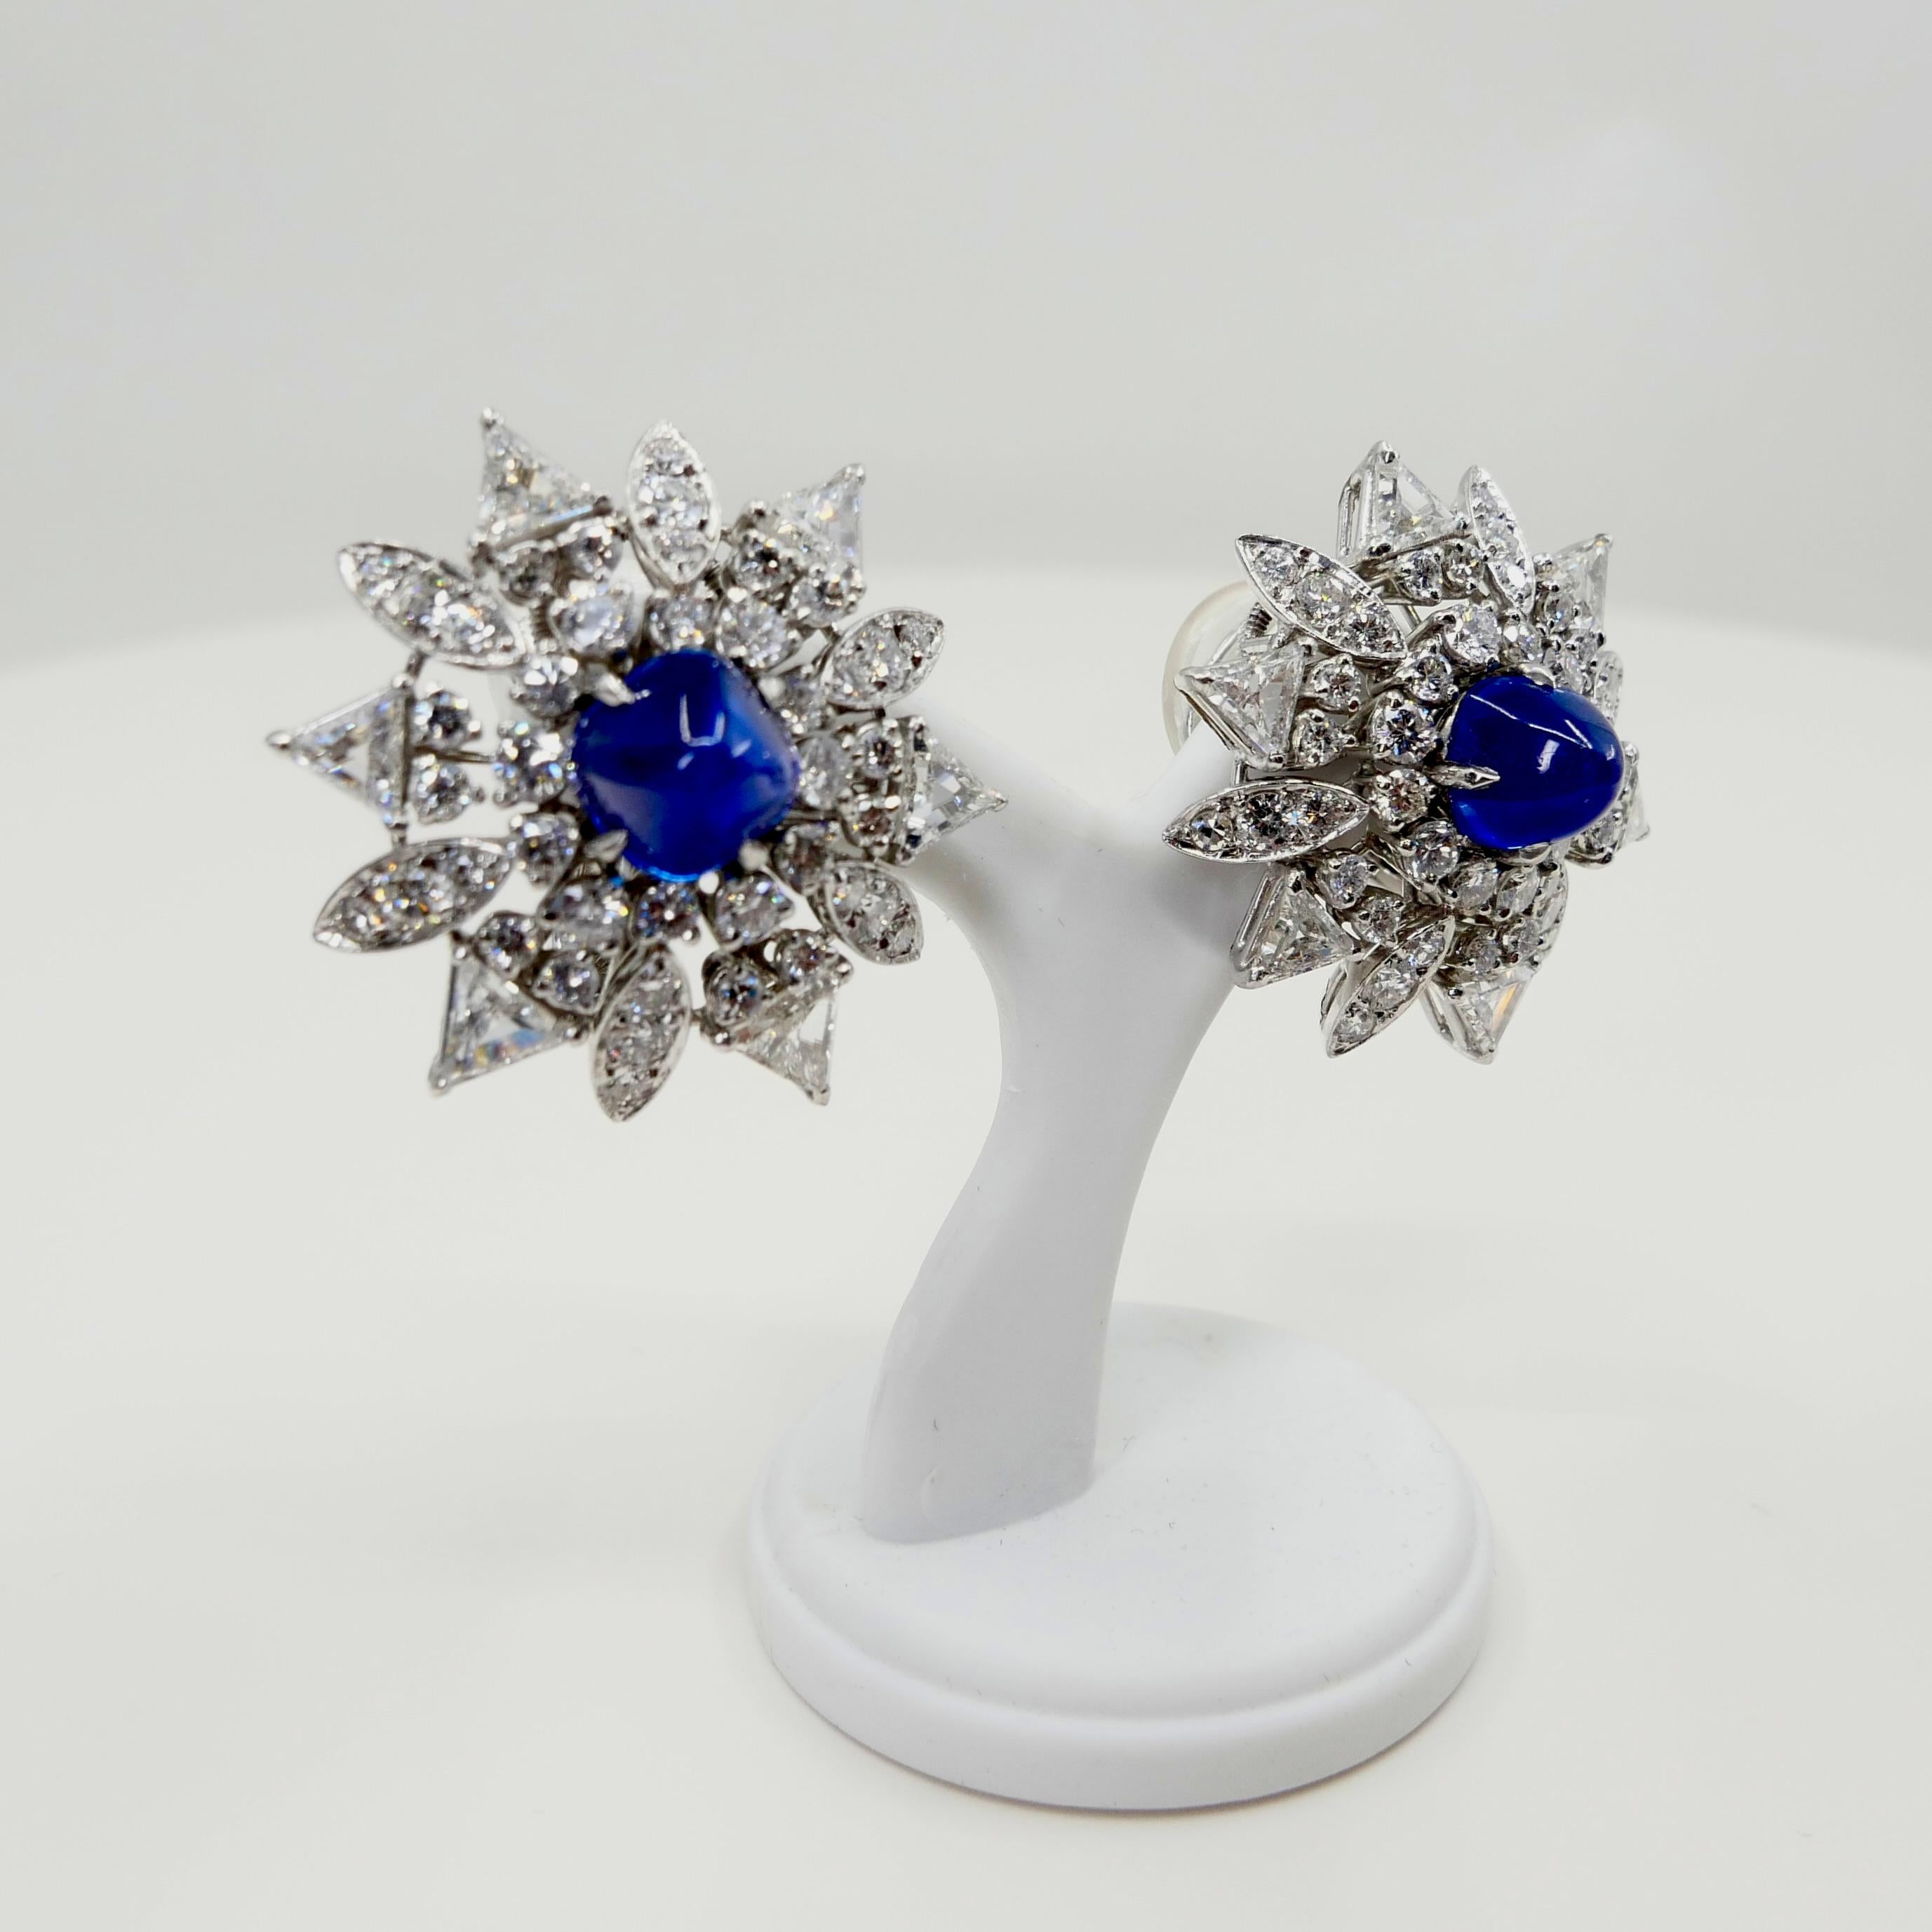 Certified Kashmir Sapphire No Heat Diamond Cluster Earrings, Cornflower Blue 7